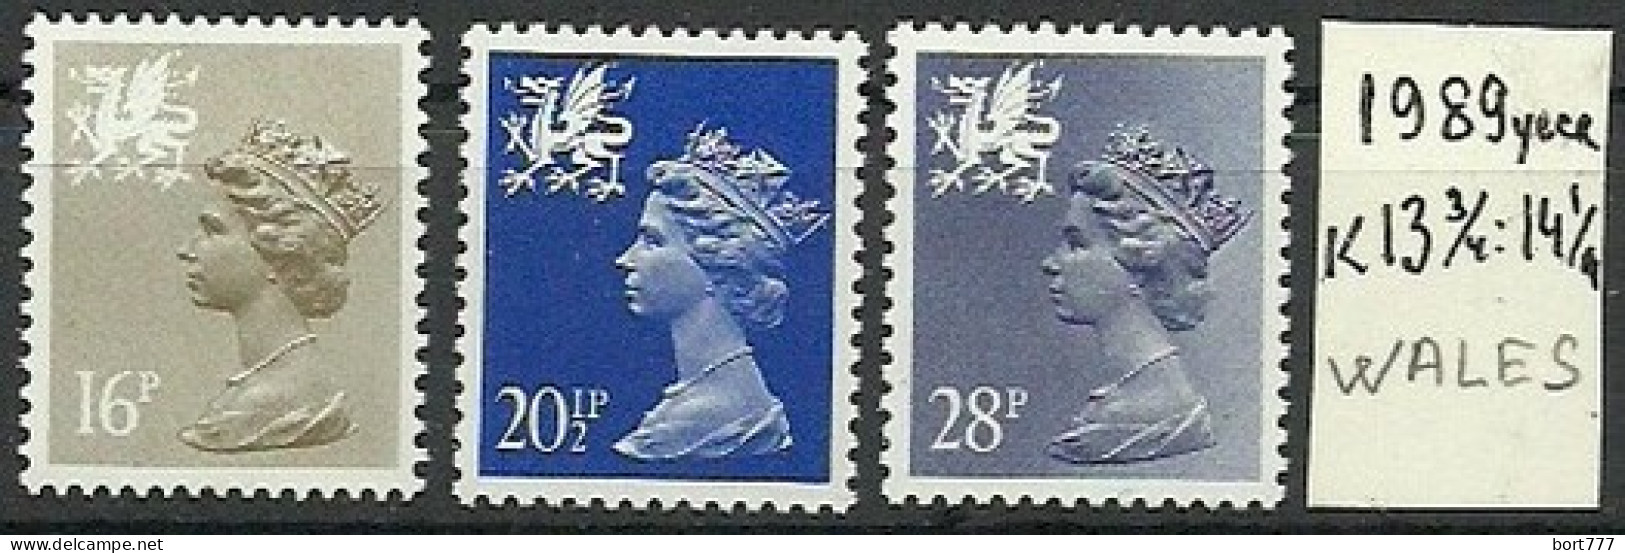 Wales 1989 Year, Mint Stamps MNH(**) Set  - Sammlungen